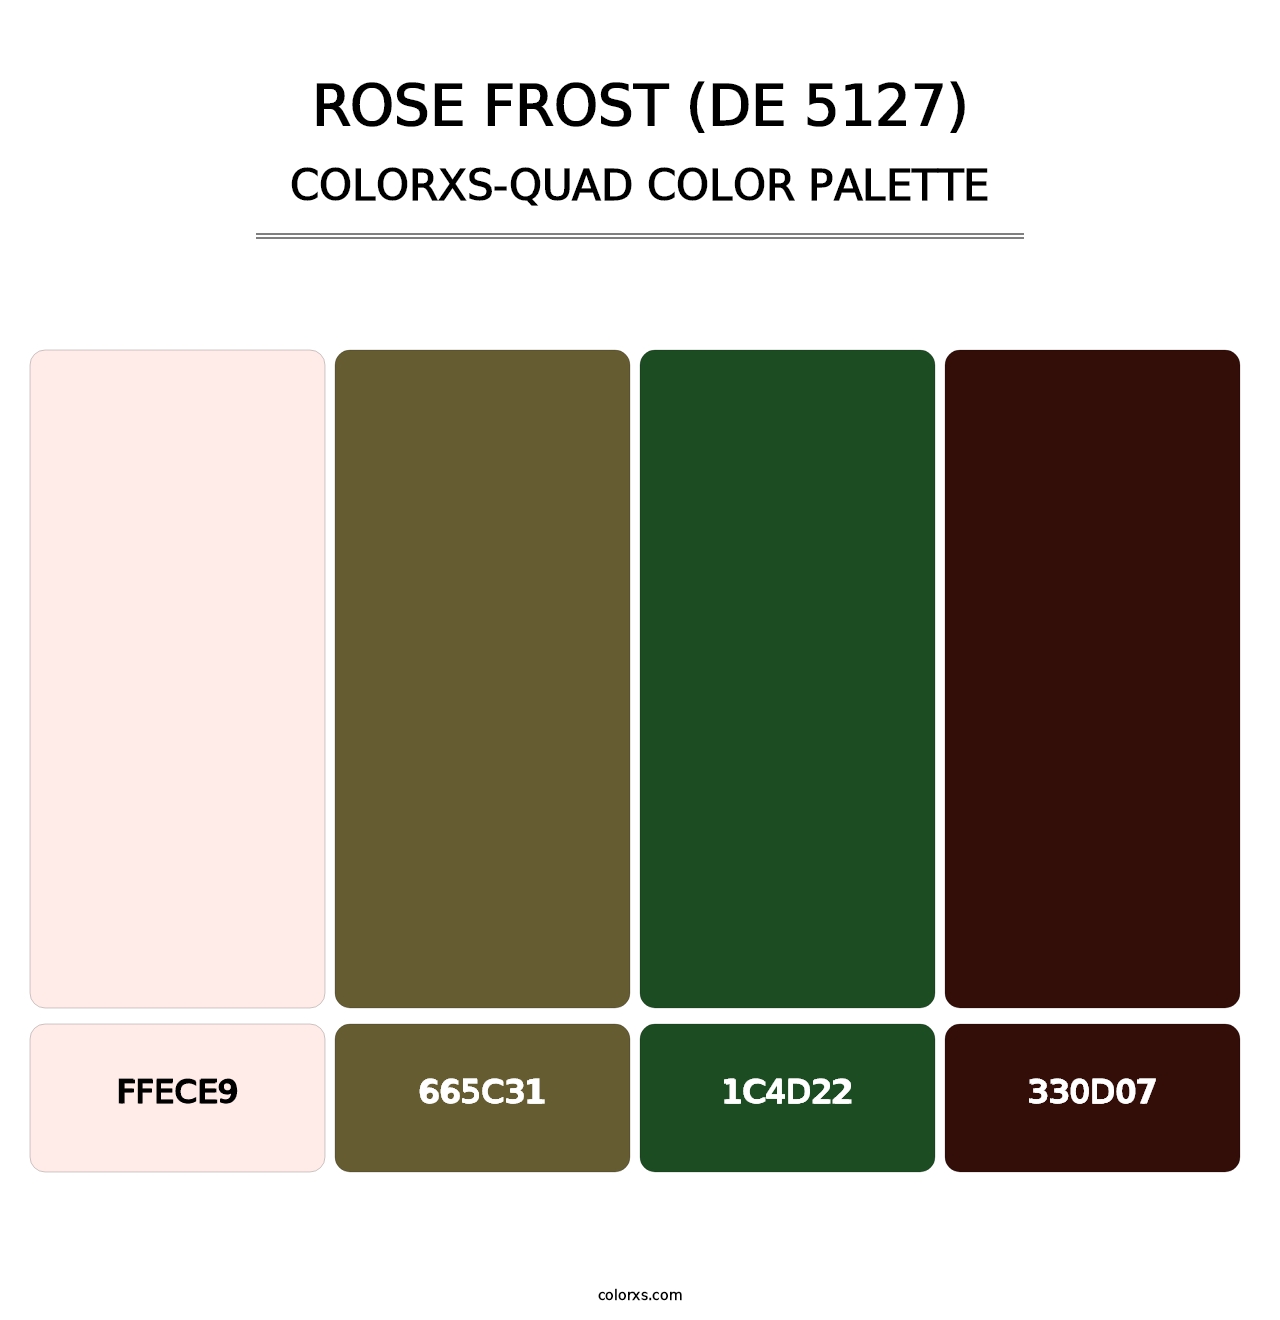 Rose Frost (DE 5127) - Colorxs Quad Palette